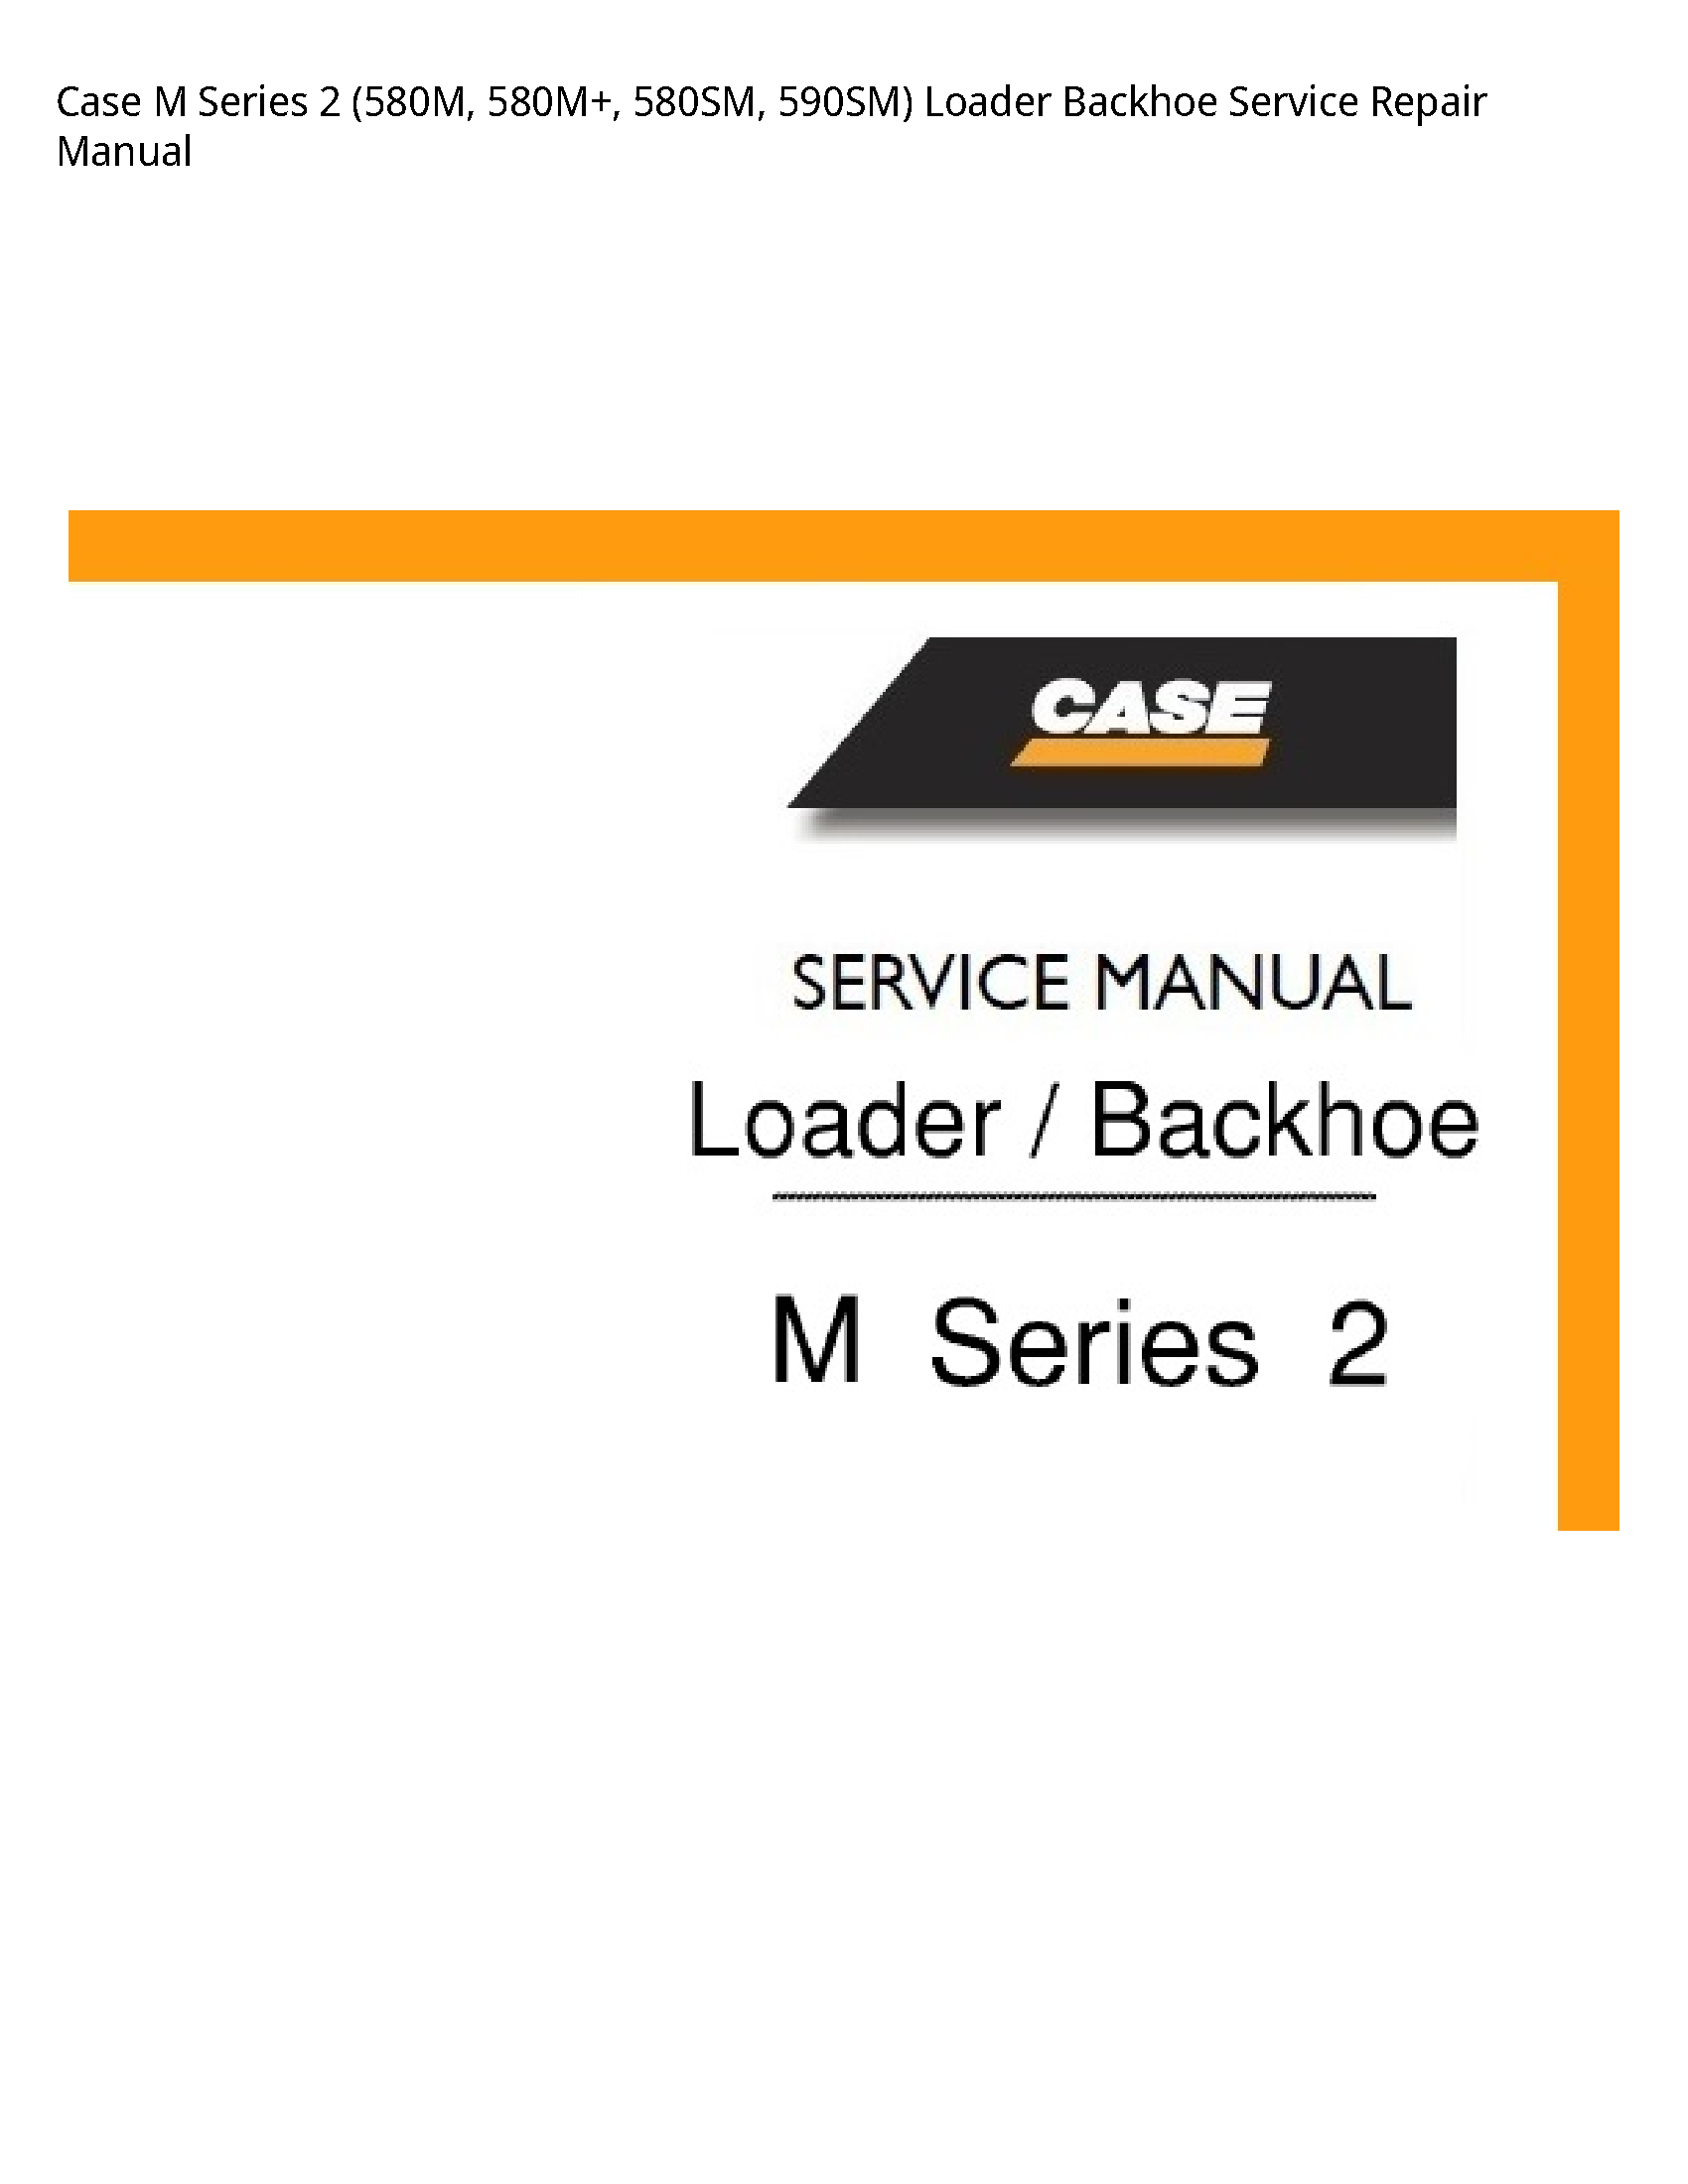 Case/Case IH 2 Series Loader Backhoe manual